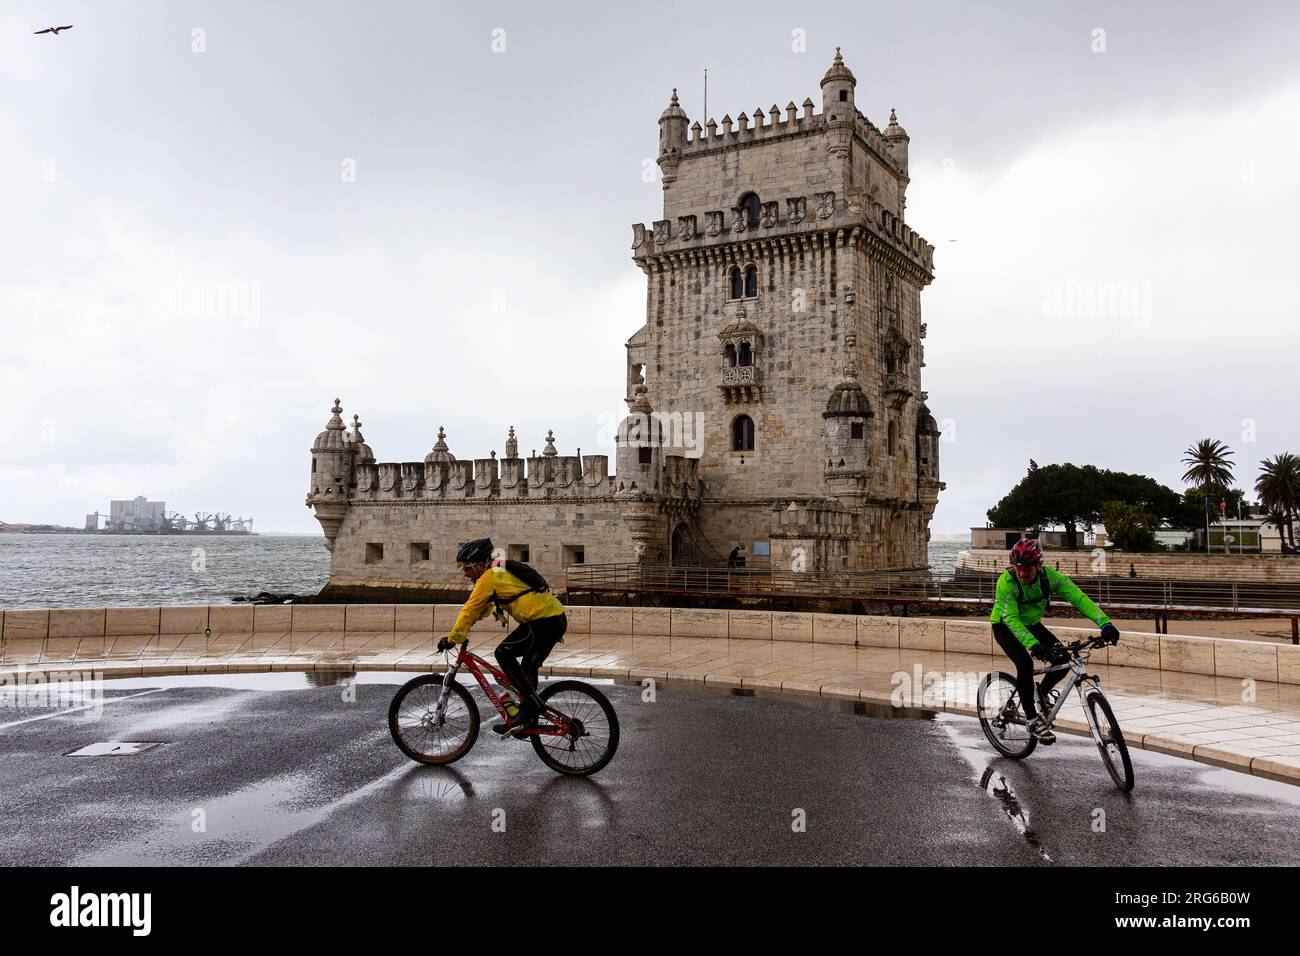 Lisbonne, Tour de Belem, Portugal, Europe, tour de sao vicente, patrimoine de l'unesco, fortification dans le style manuélin, fortification défensive Banque D'Images